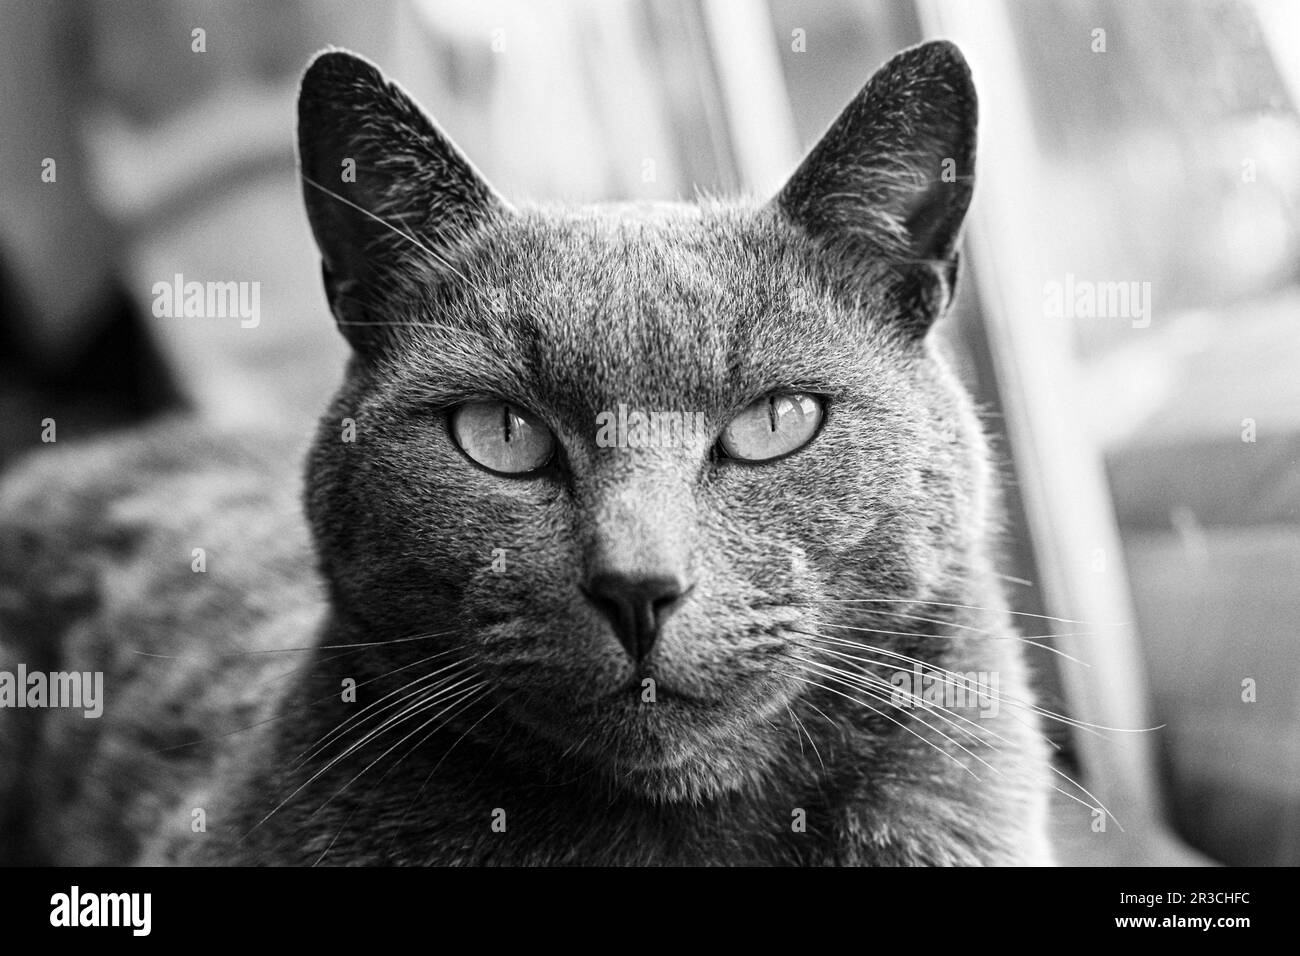 Ritratto di un gatto tabby blu russo che guarda la fotocamera Foto Stock